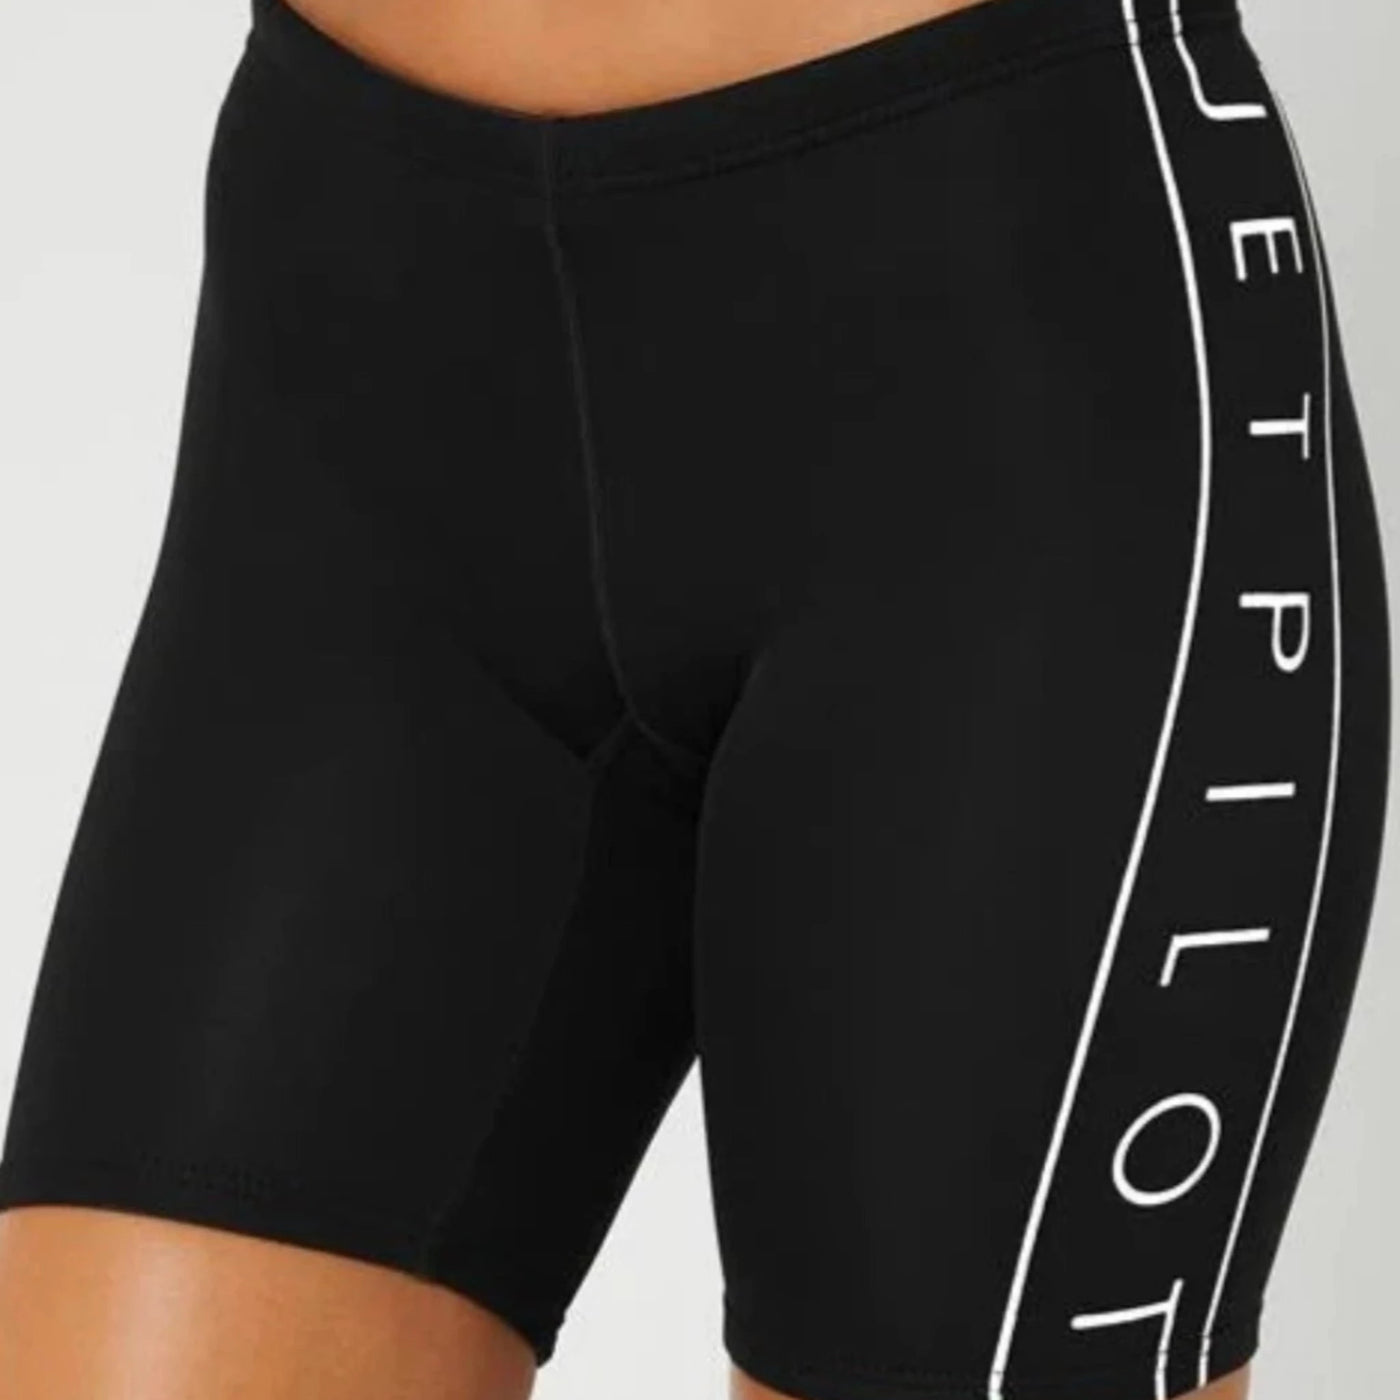 Jetpilot Women's Cause 7" Wetsuit Shorts